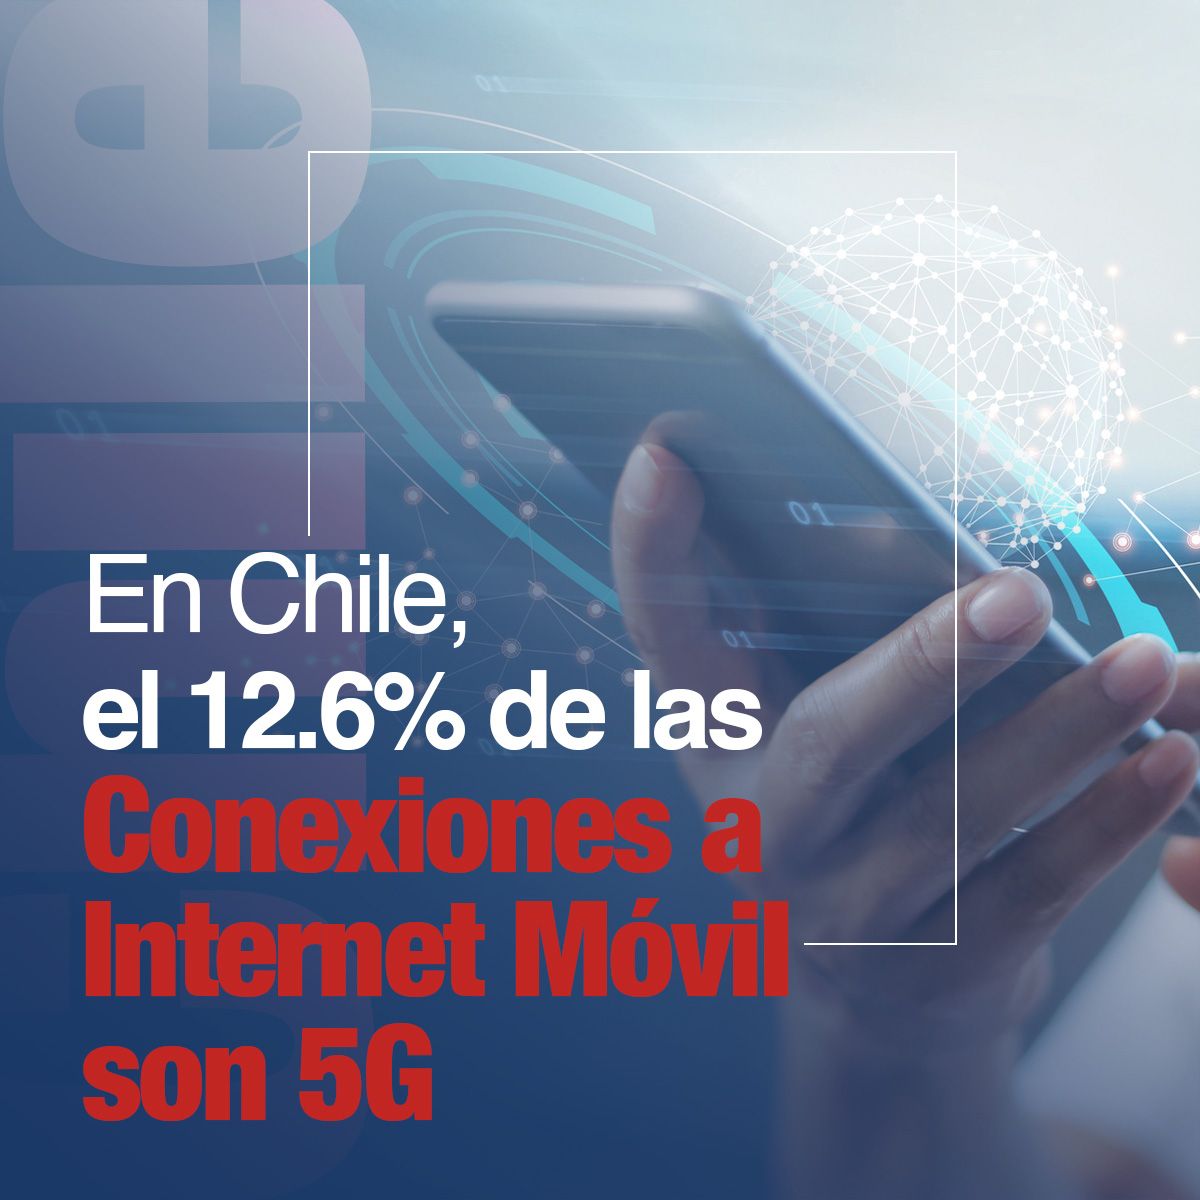 En Chile, el 12.6% de las Conexiones a Internet Móvil son 5G